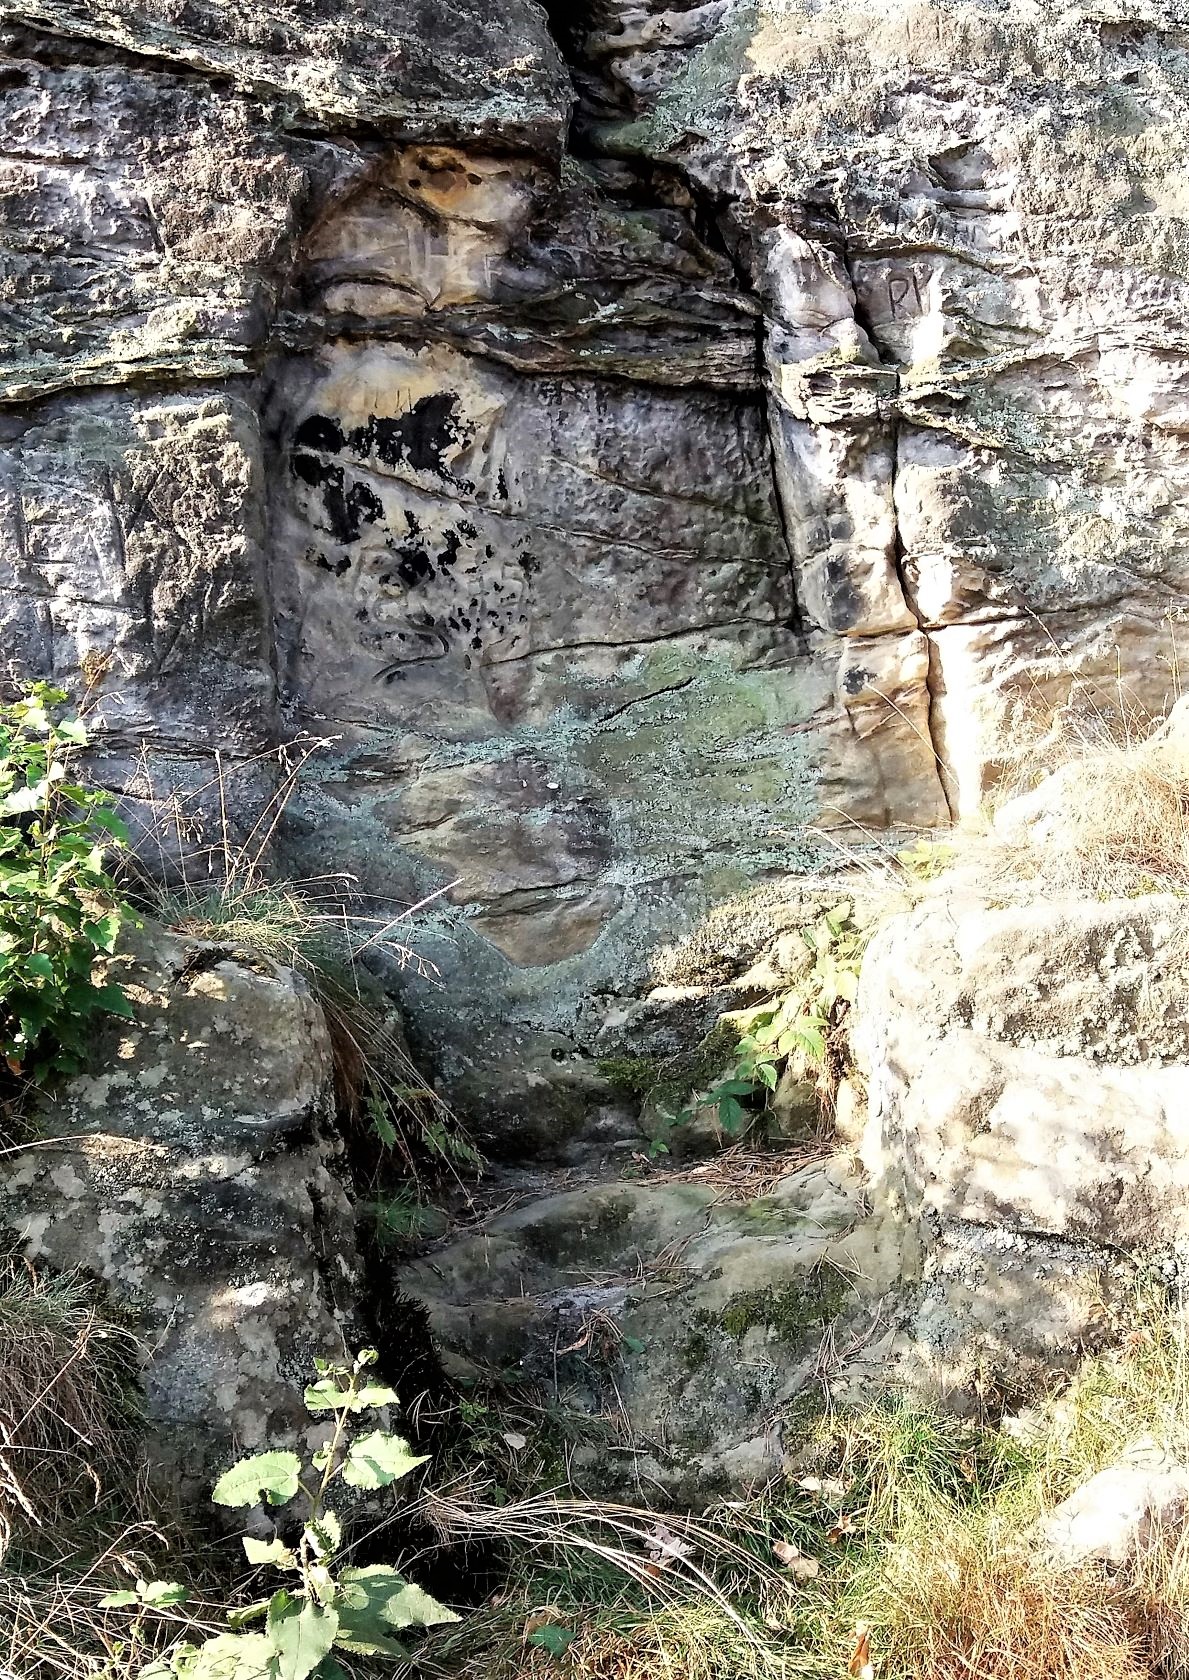 Seltsame bogenförmige Aussparung mit Stufen davor, war hier einst eine Figur oder Heiligenbild darin